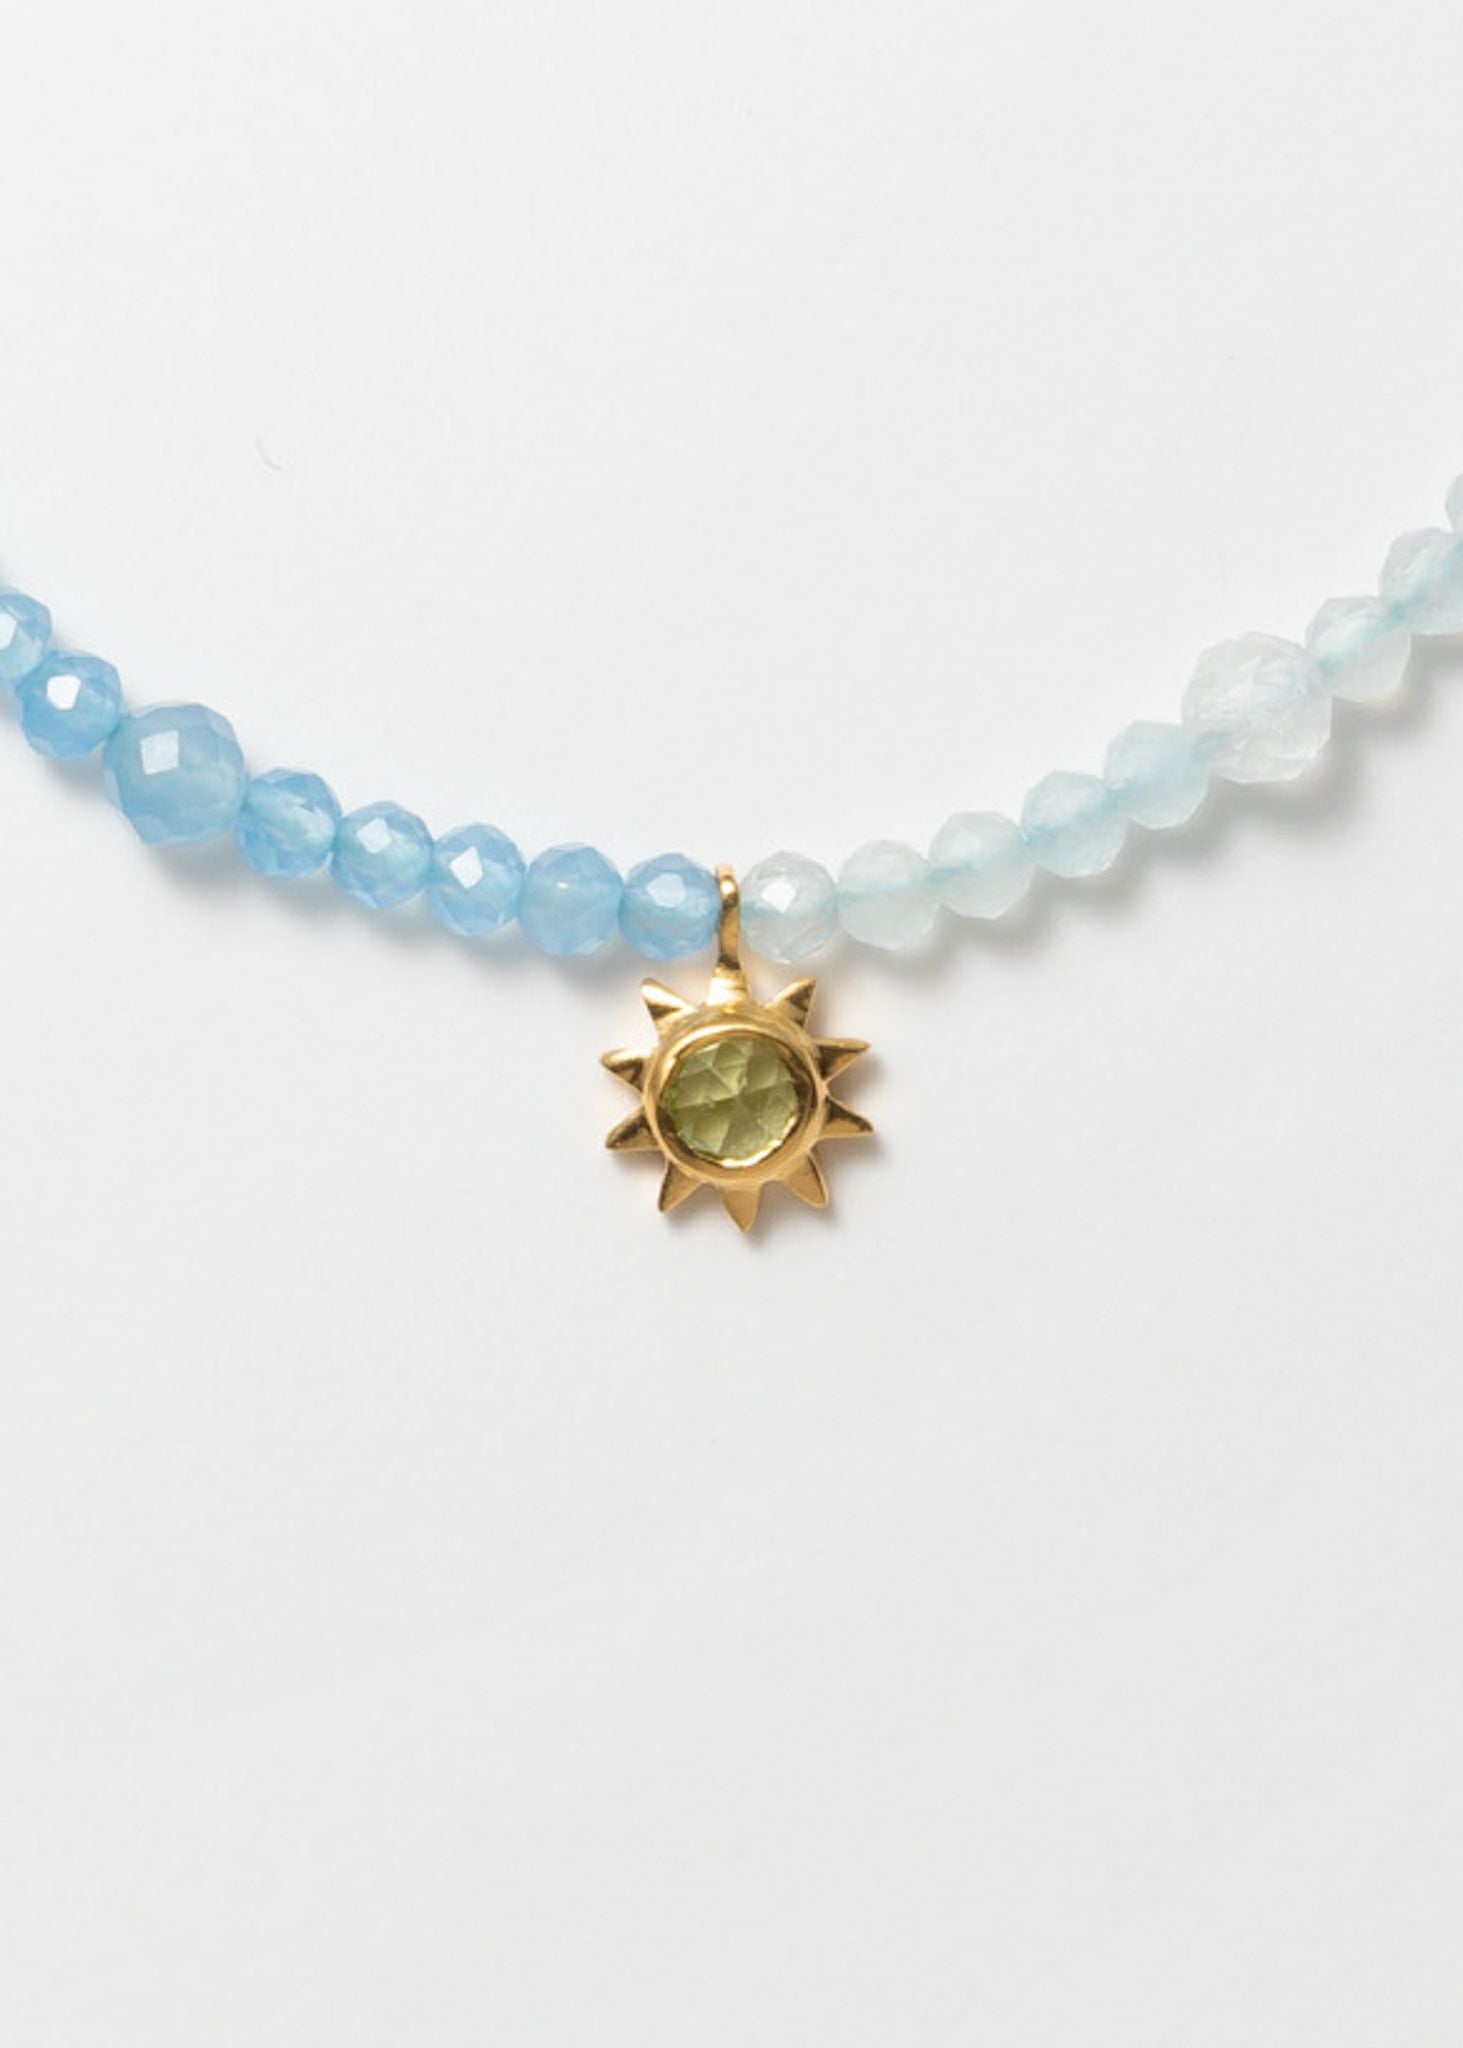 '- Aquarius Aquarius - Beads Bracelet With Charm